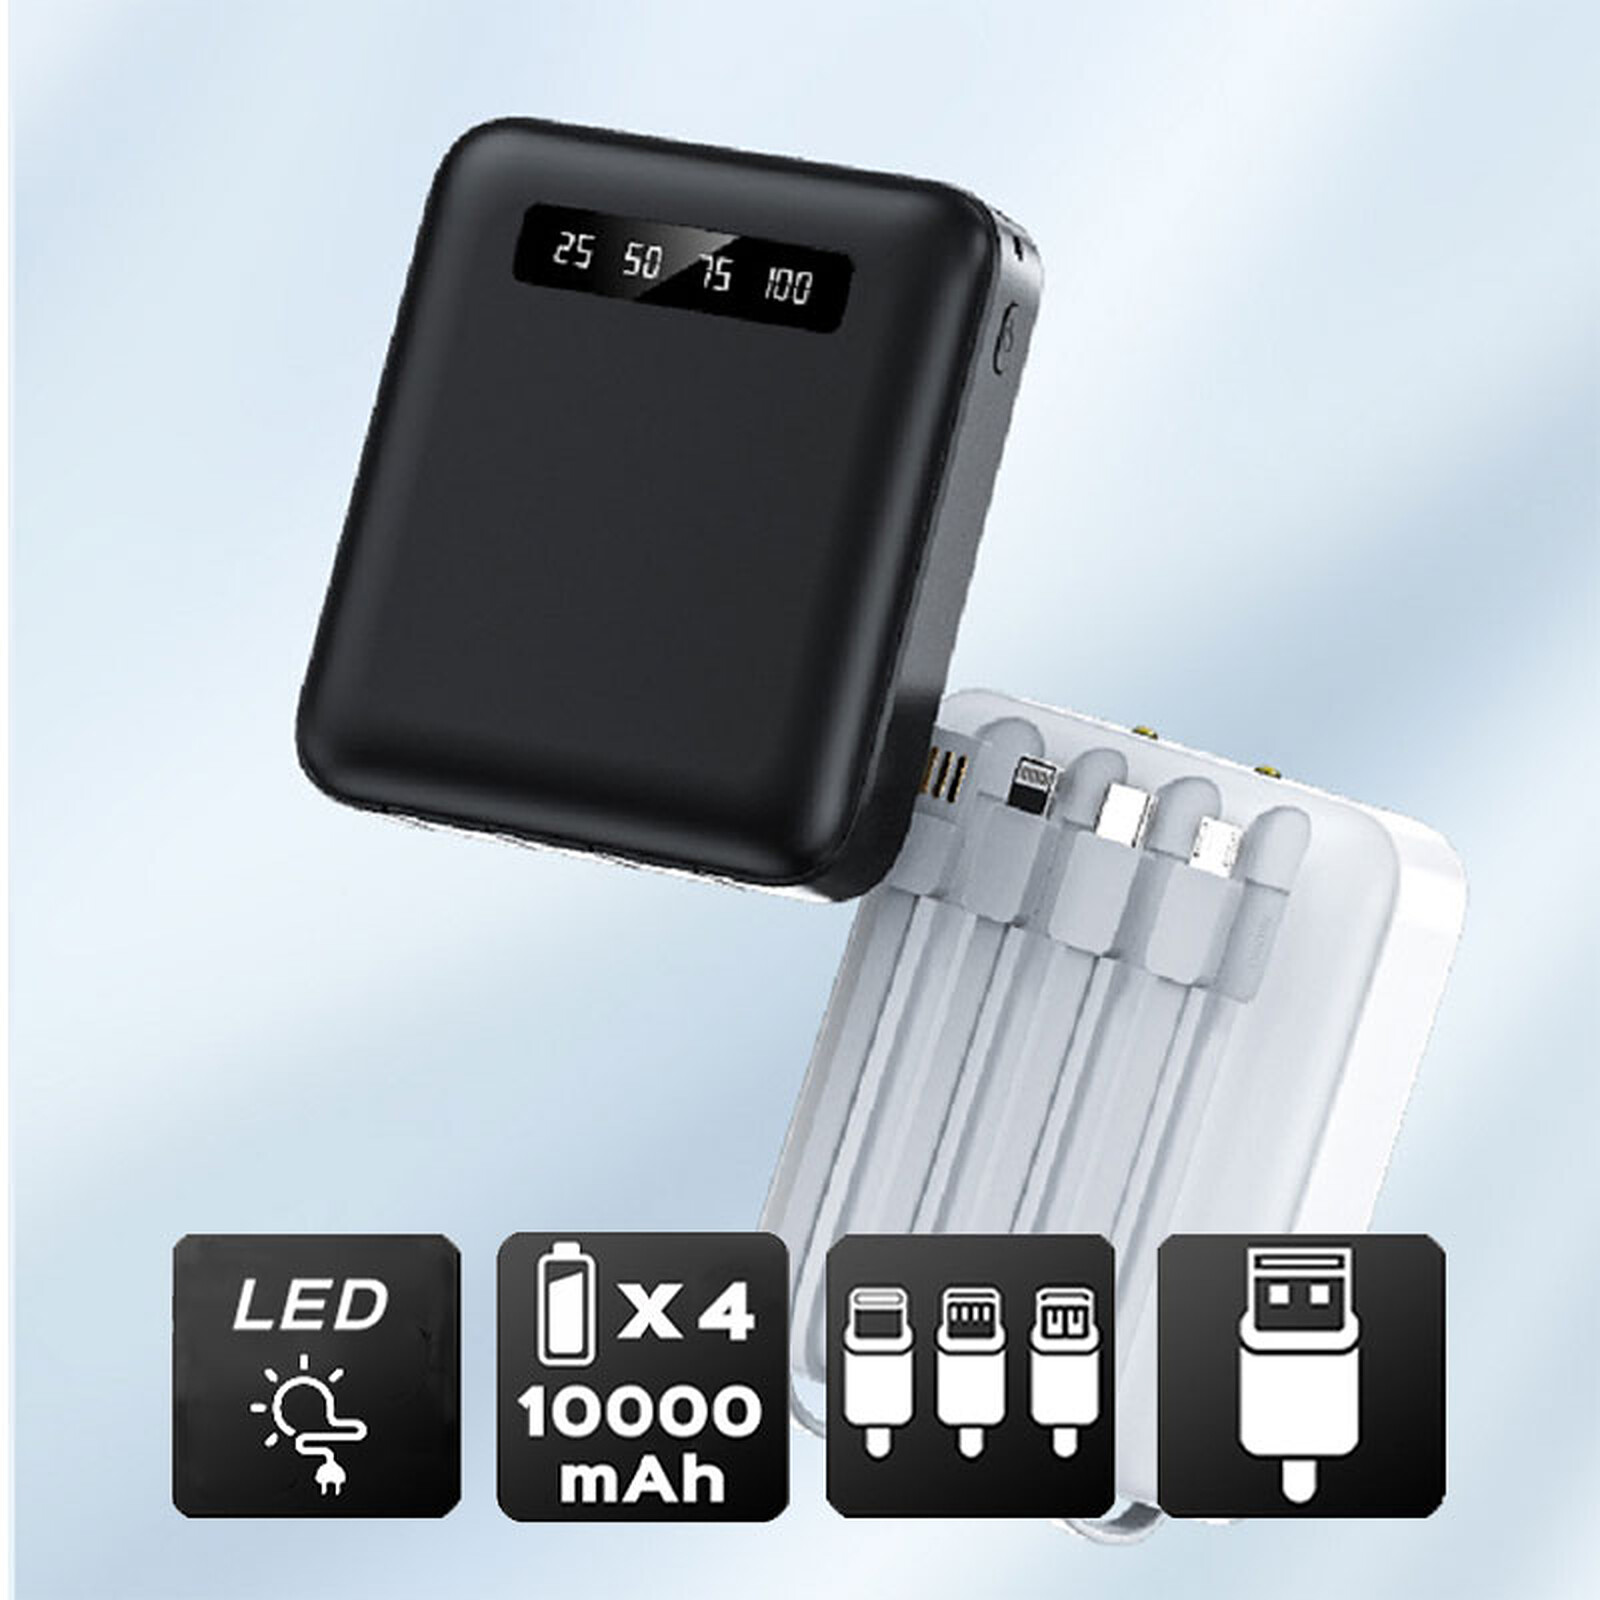 Mobility Lab Powerbank Cuir 20000 mAh (Noir) - Batterie externe - LDLC